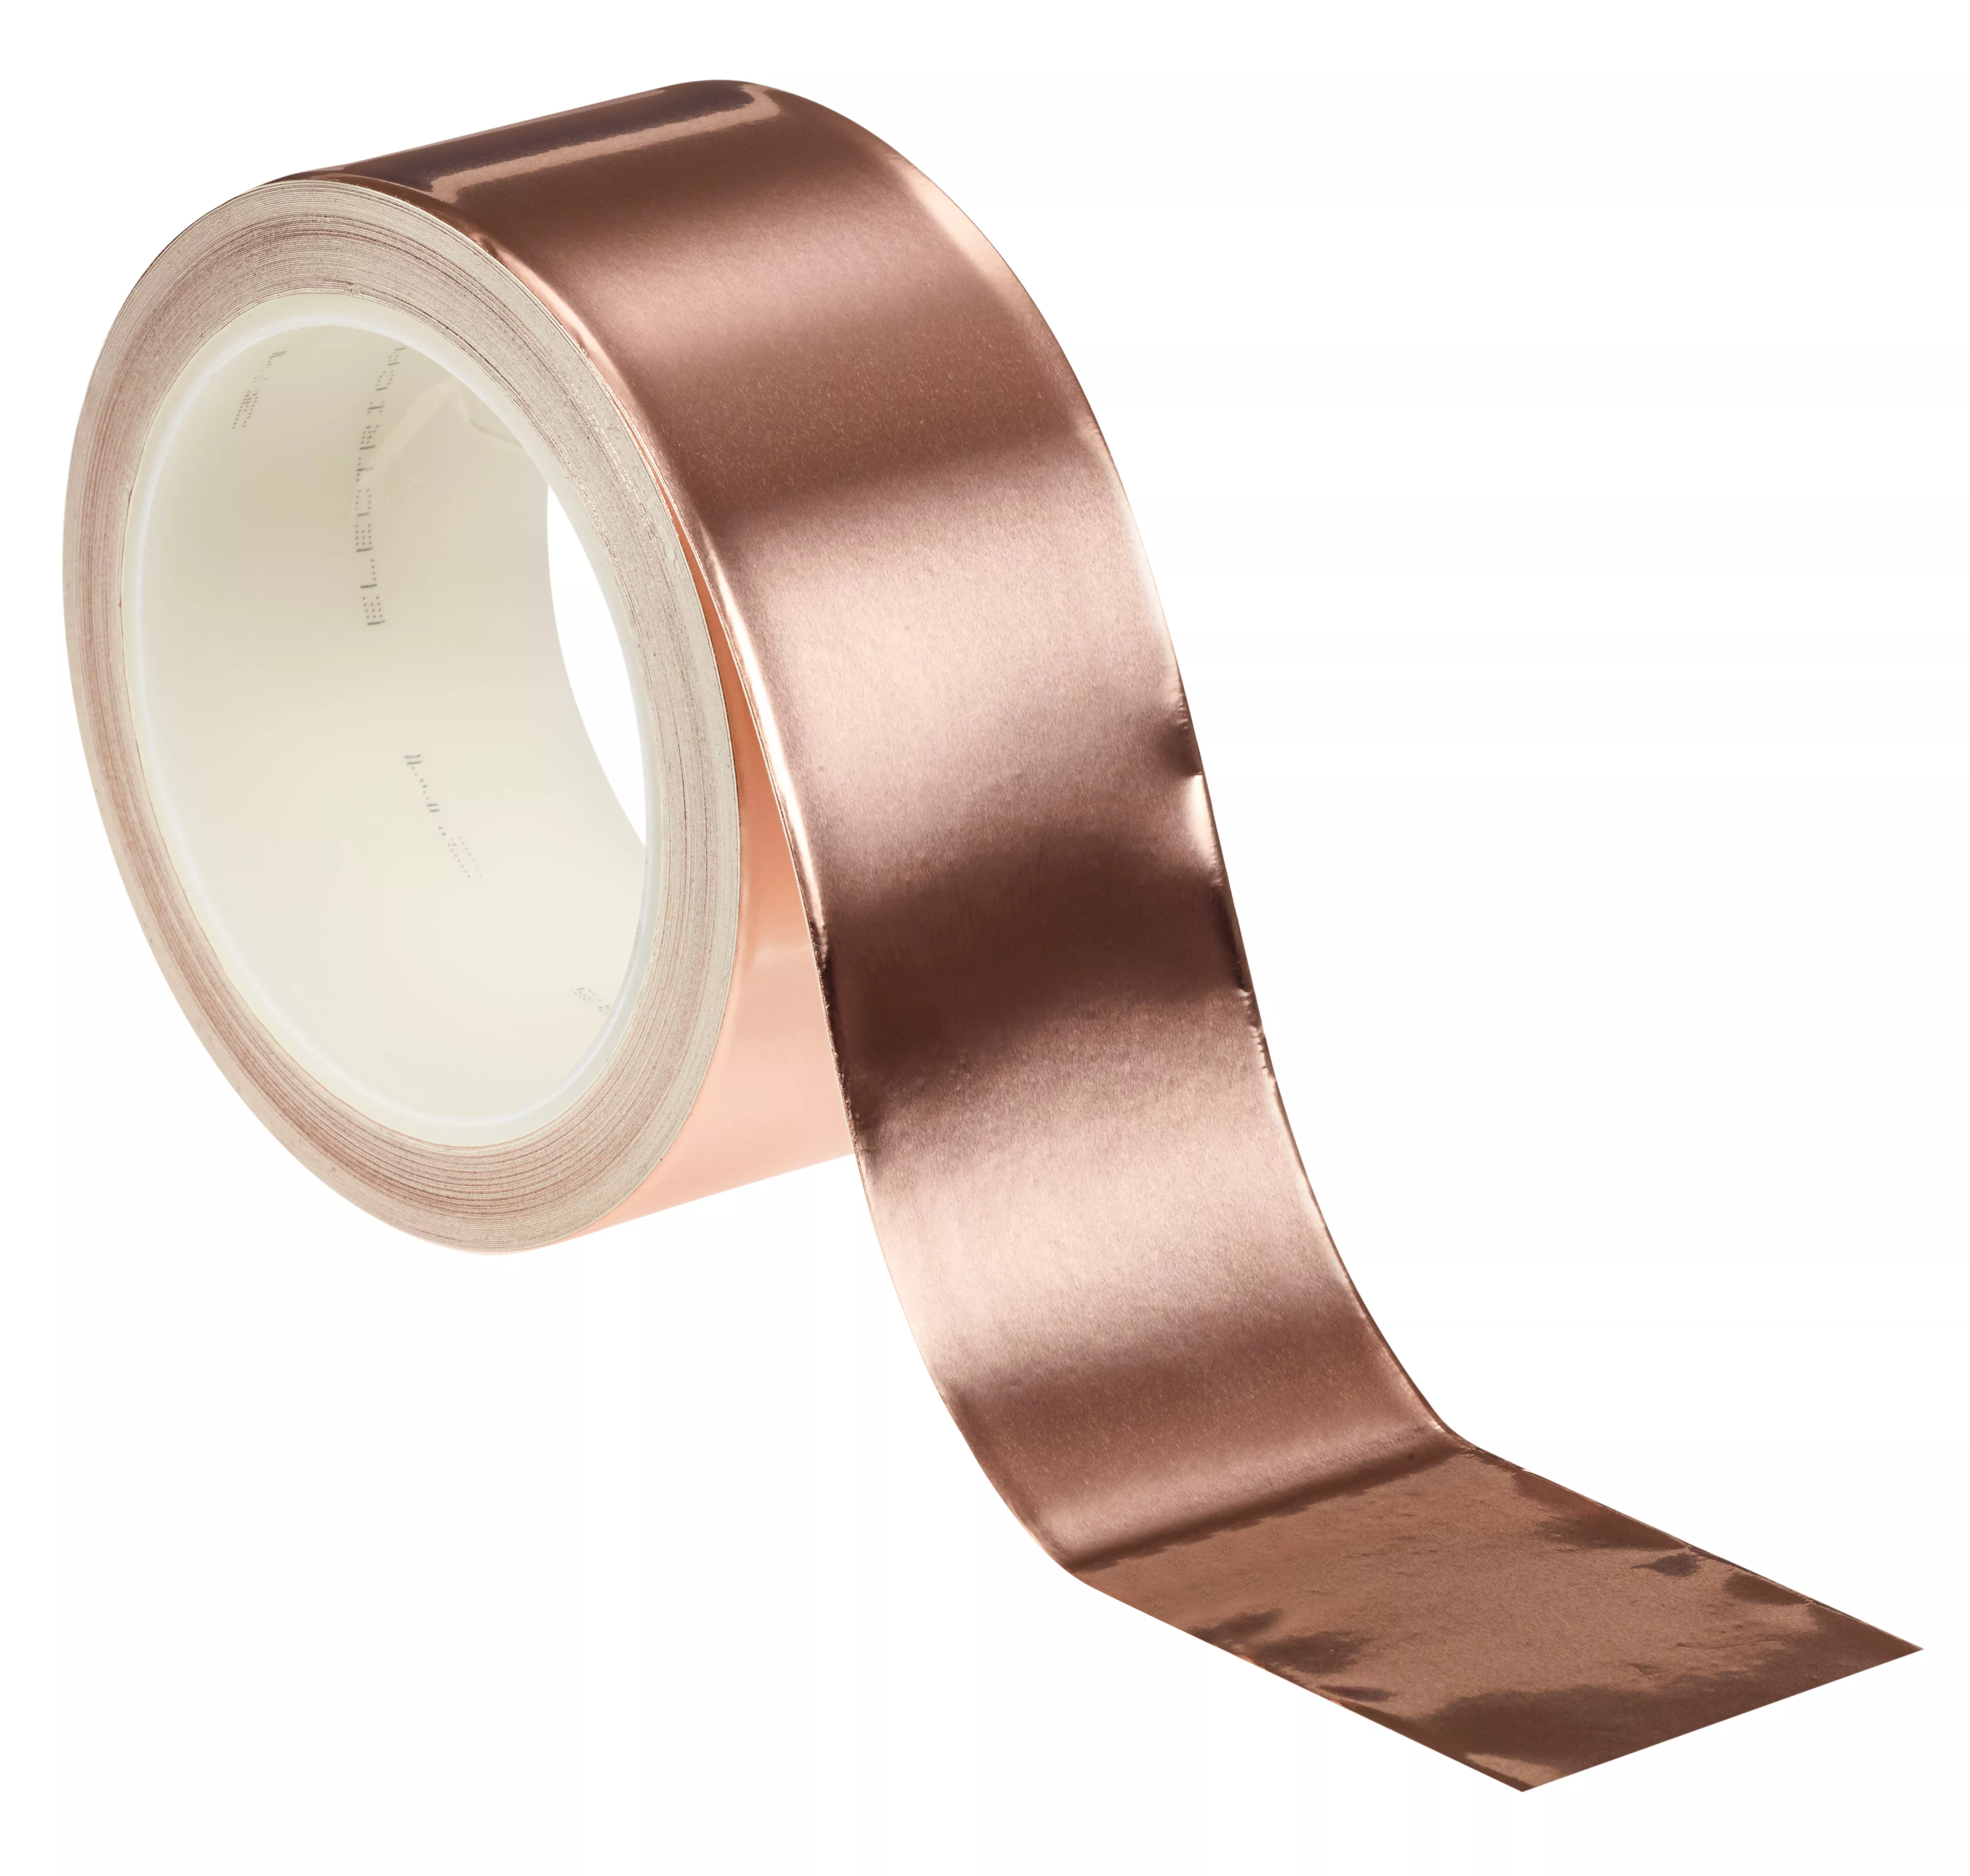 3M™ EMI Copper Foil Shielding Tape 1181, 2 in x 18 yd (50,80 mm x 16.5
m), 5 per case